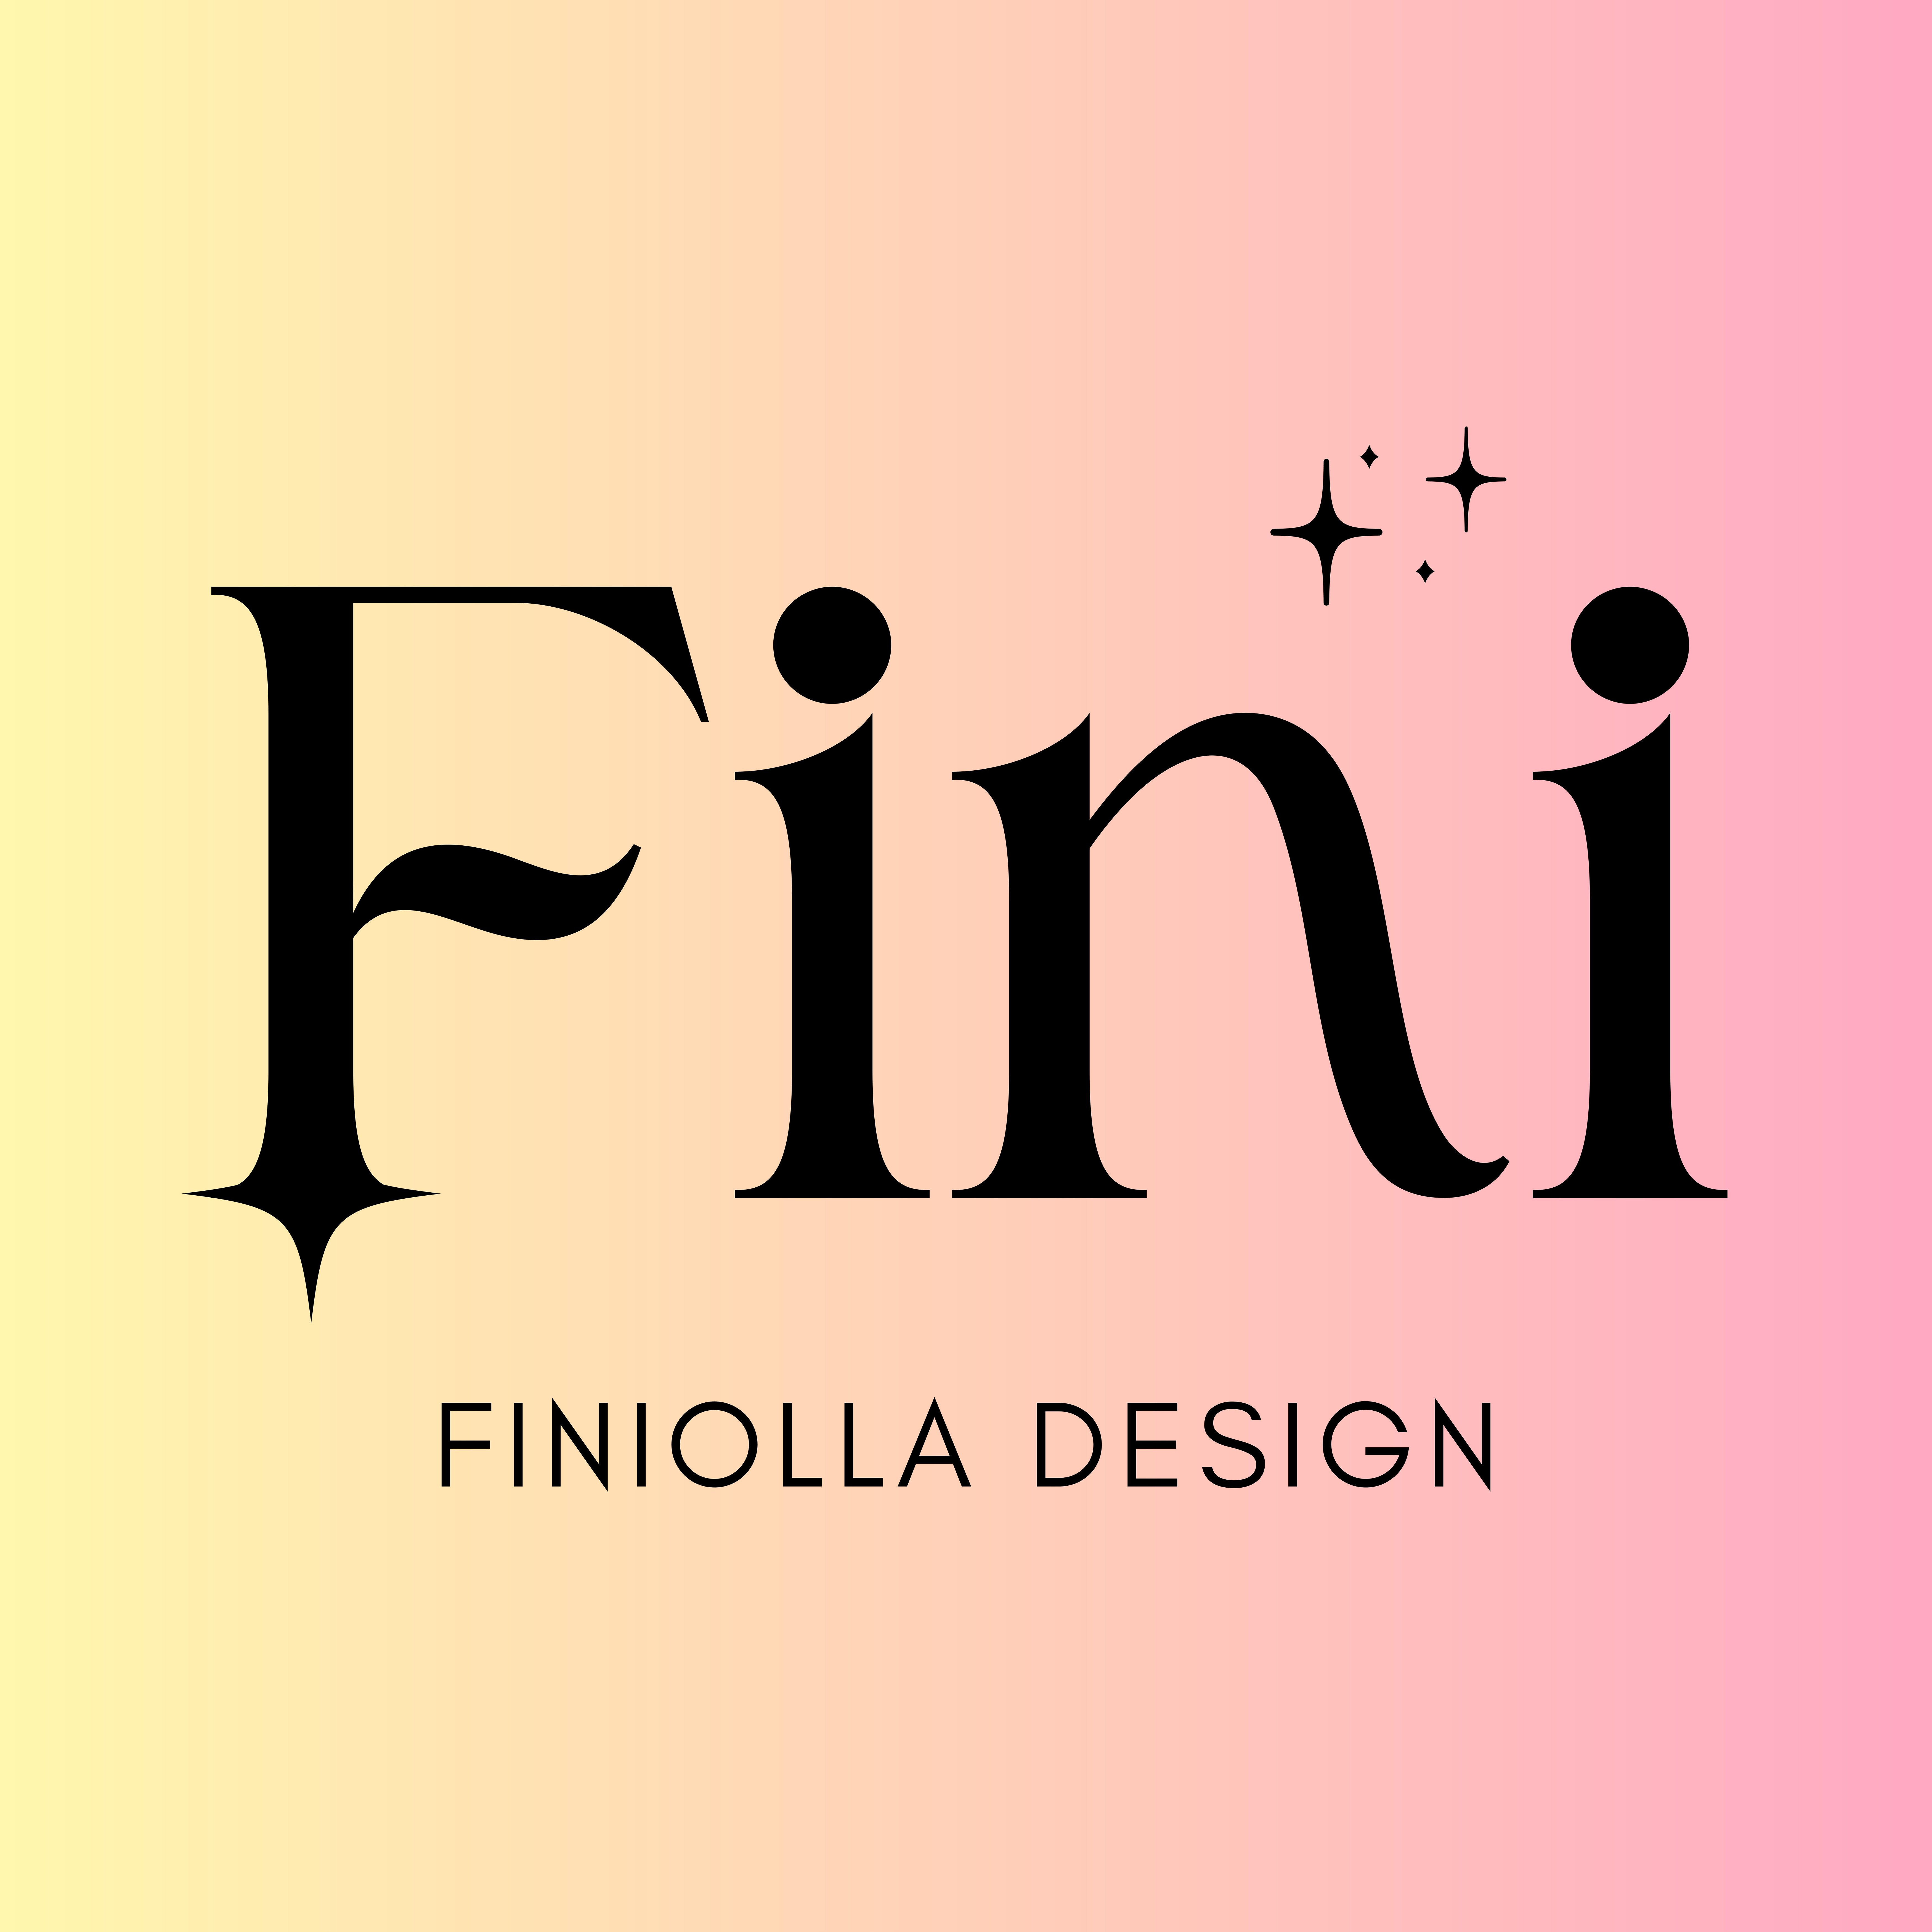 Finiolla Design - foto do perfil